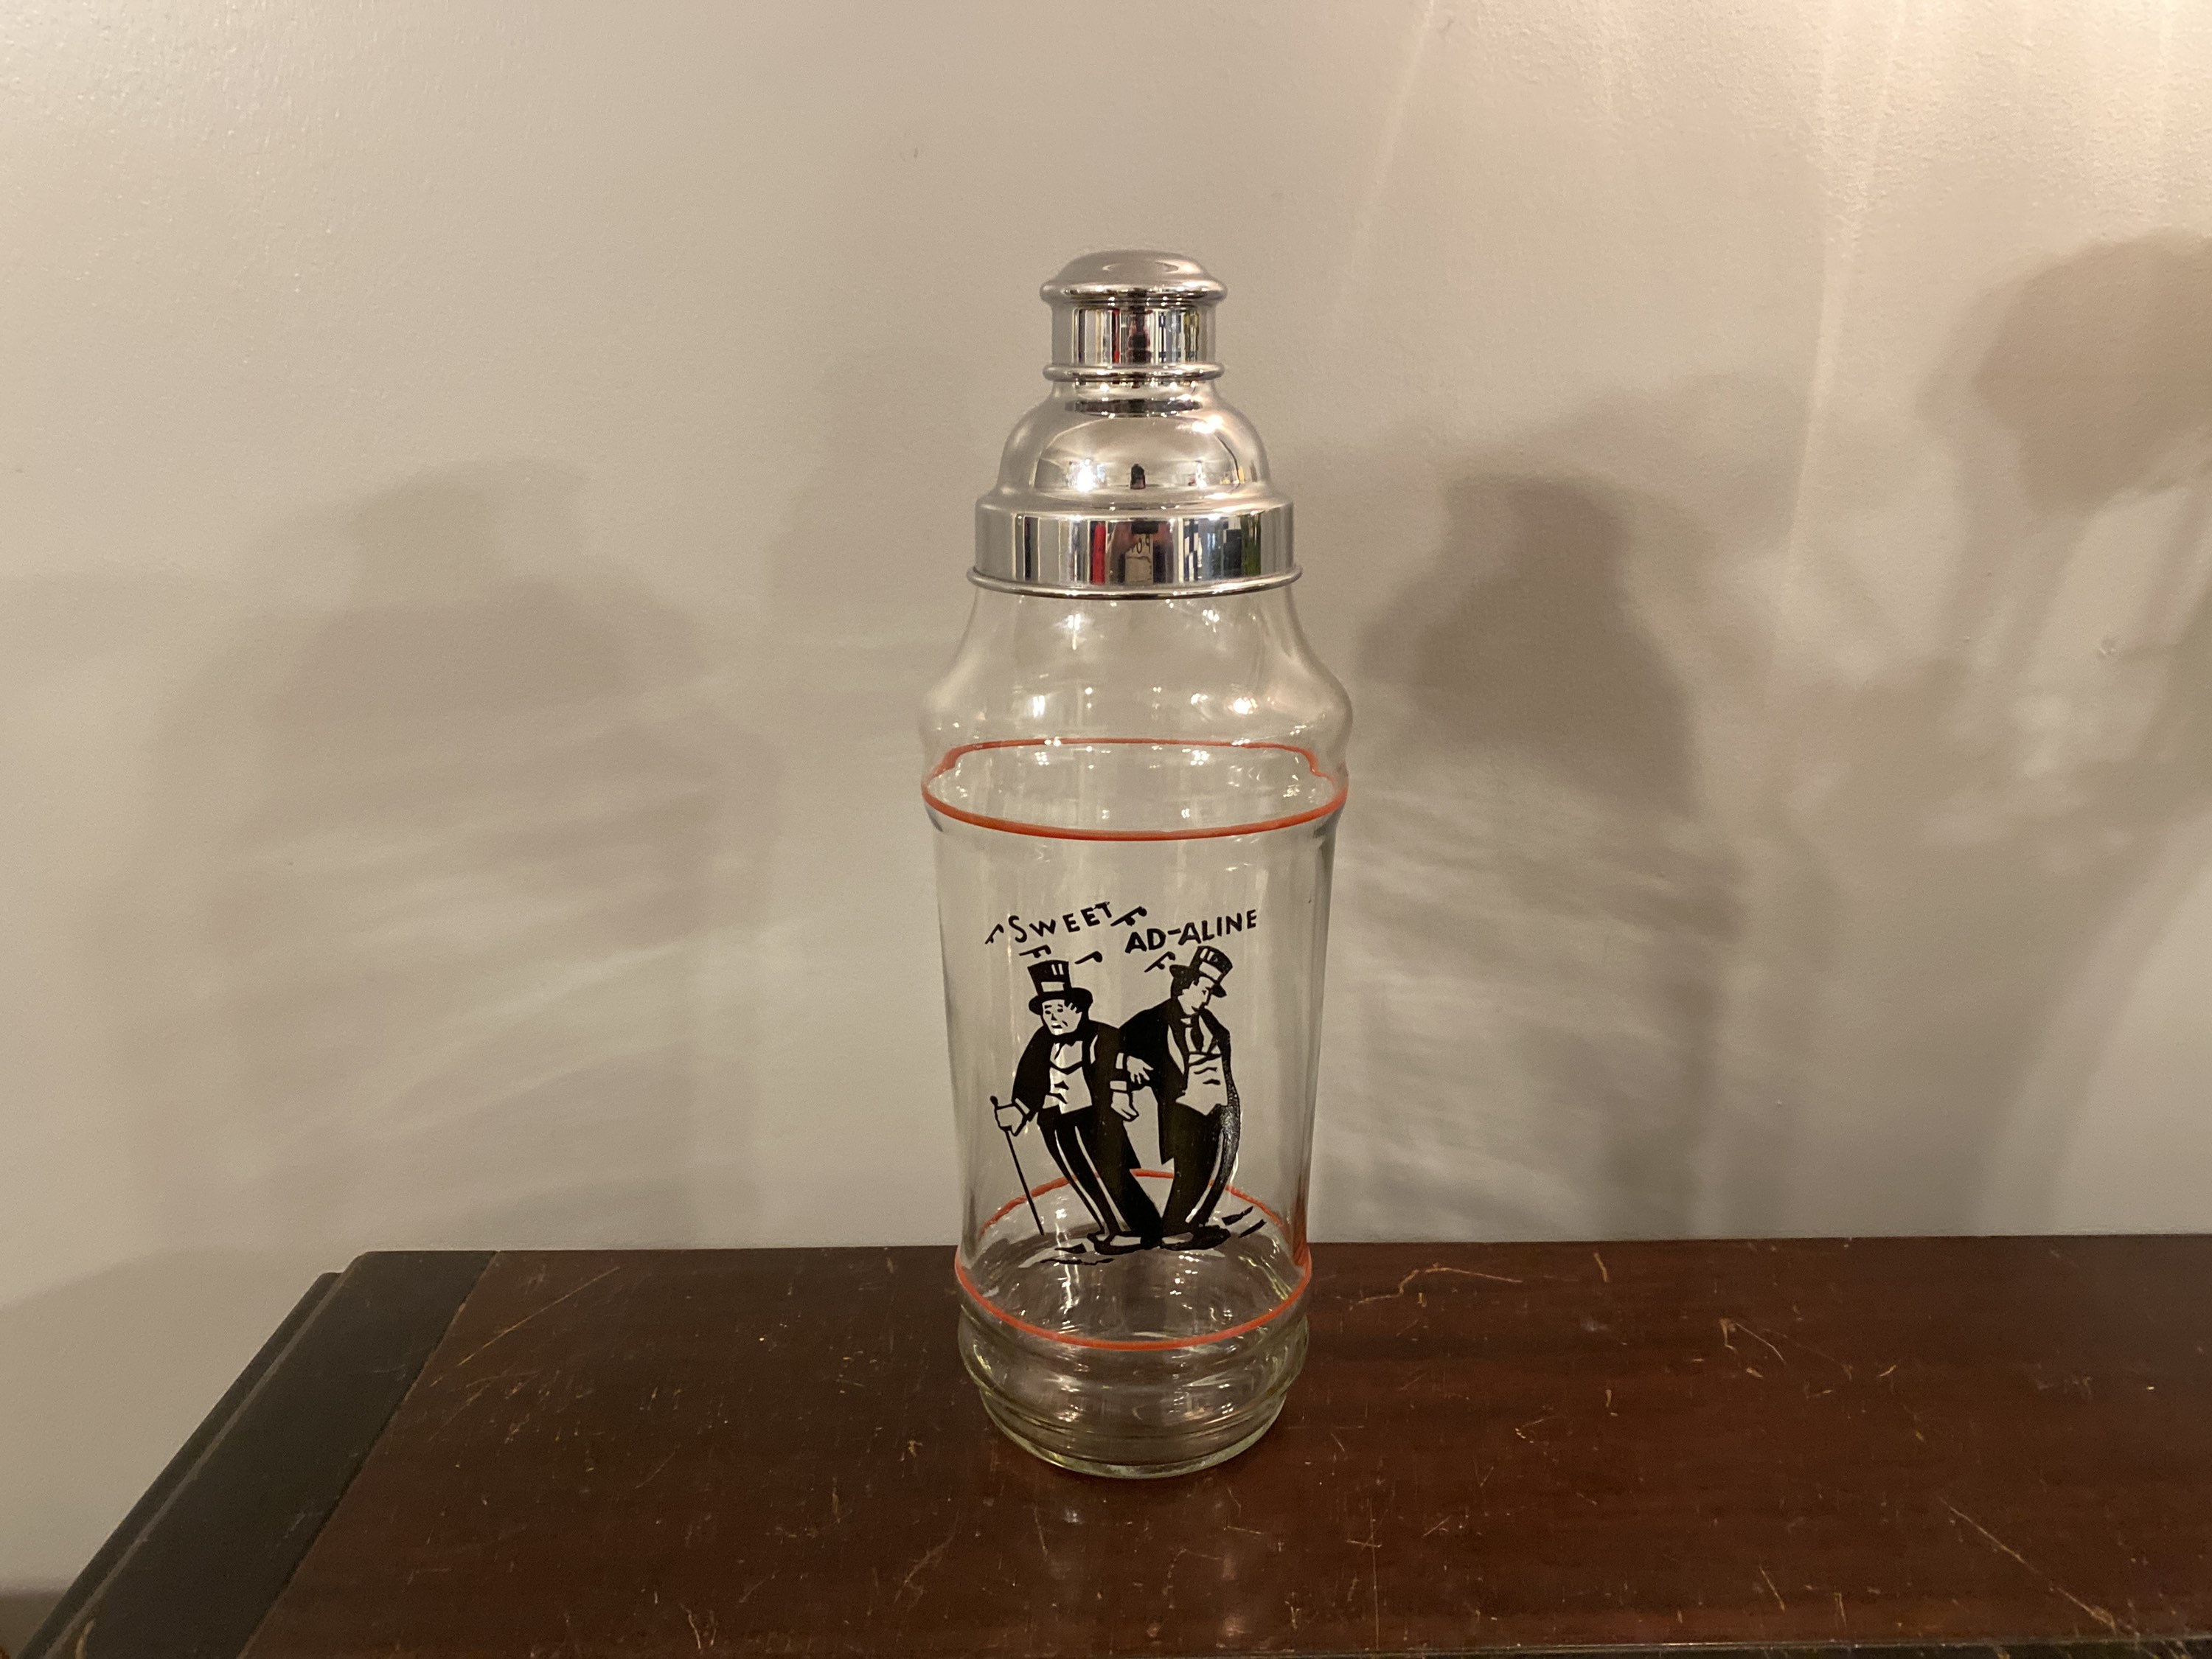 Vintage Large Cocktail Shaker – KRB